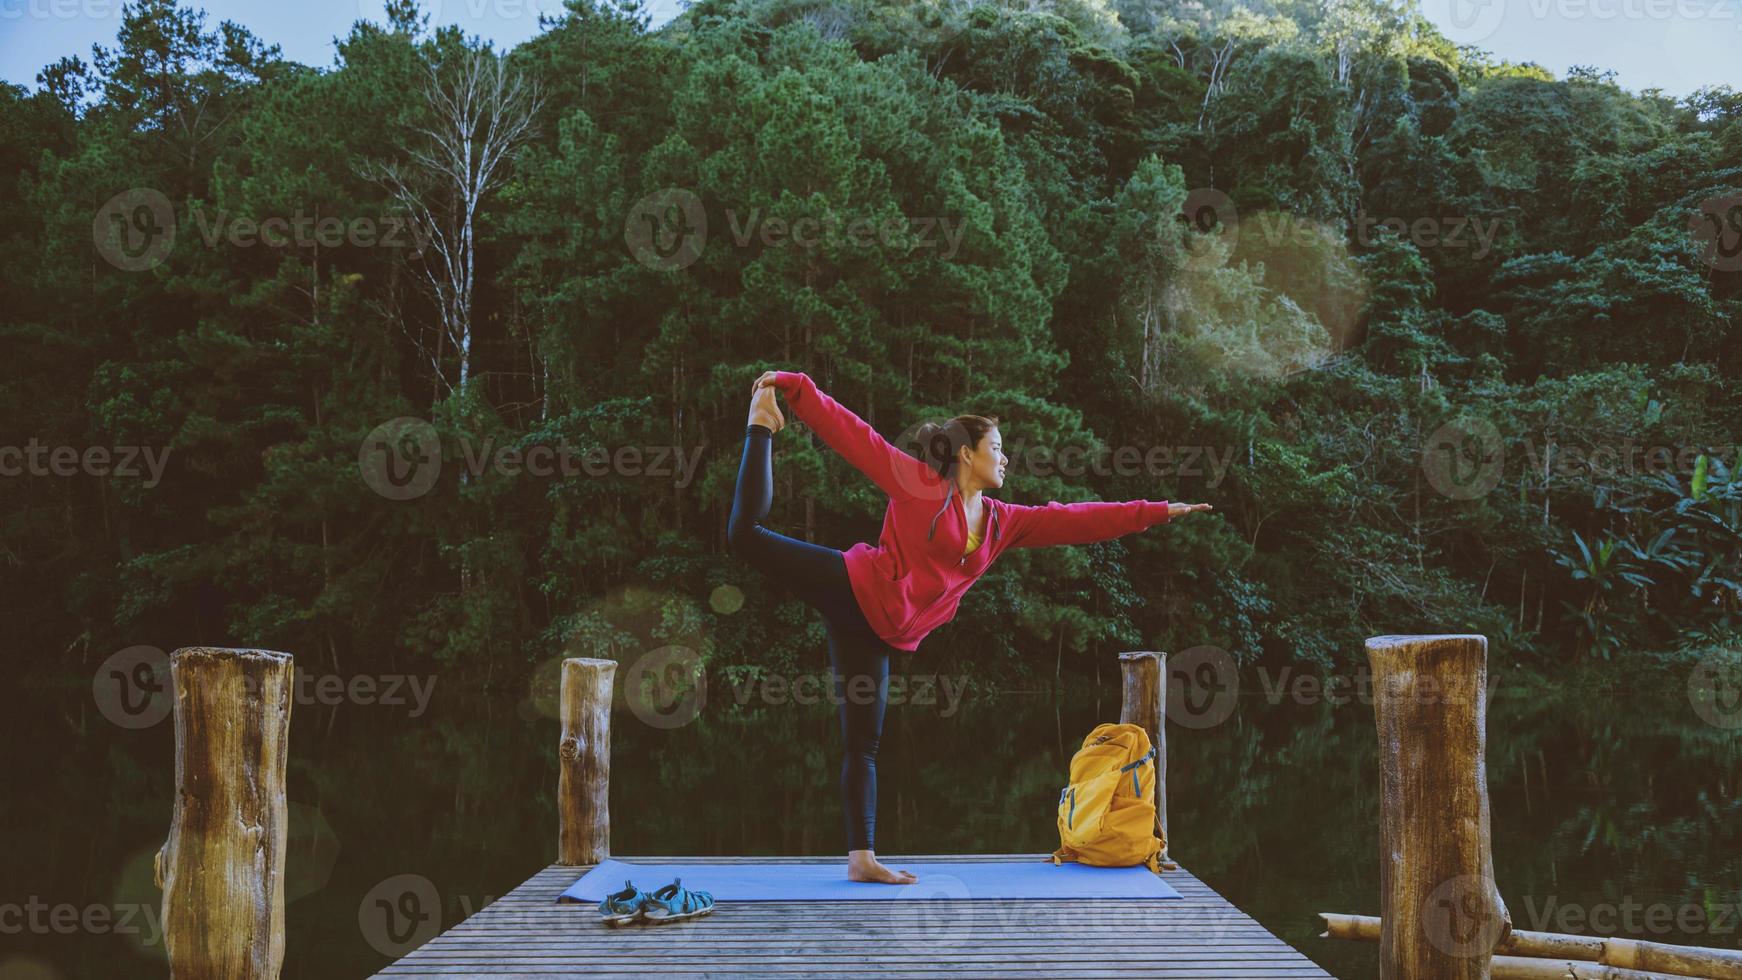 mulheres asiáticas relaxam no feriado. jogar se ioga. na montanha, exercite-se, pratique ioga na ponte de bambu ao lado do lago na névoa em pang ung, tailândia. foto